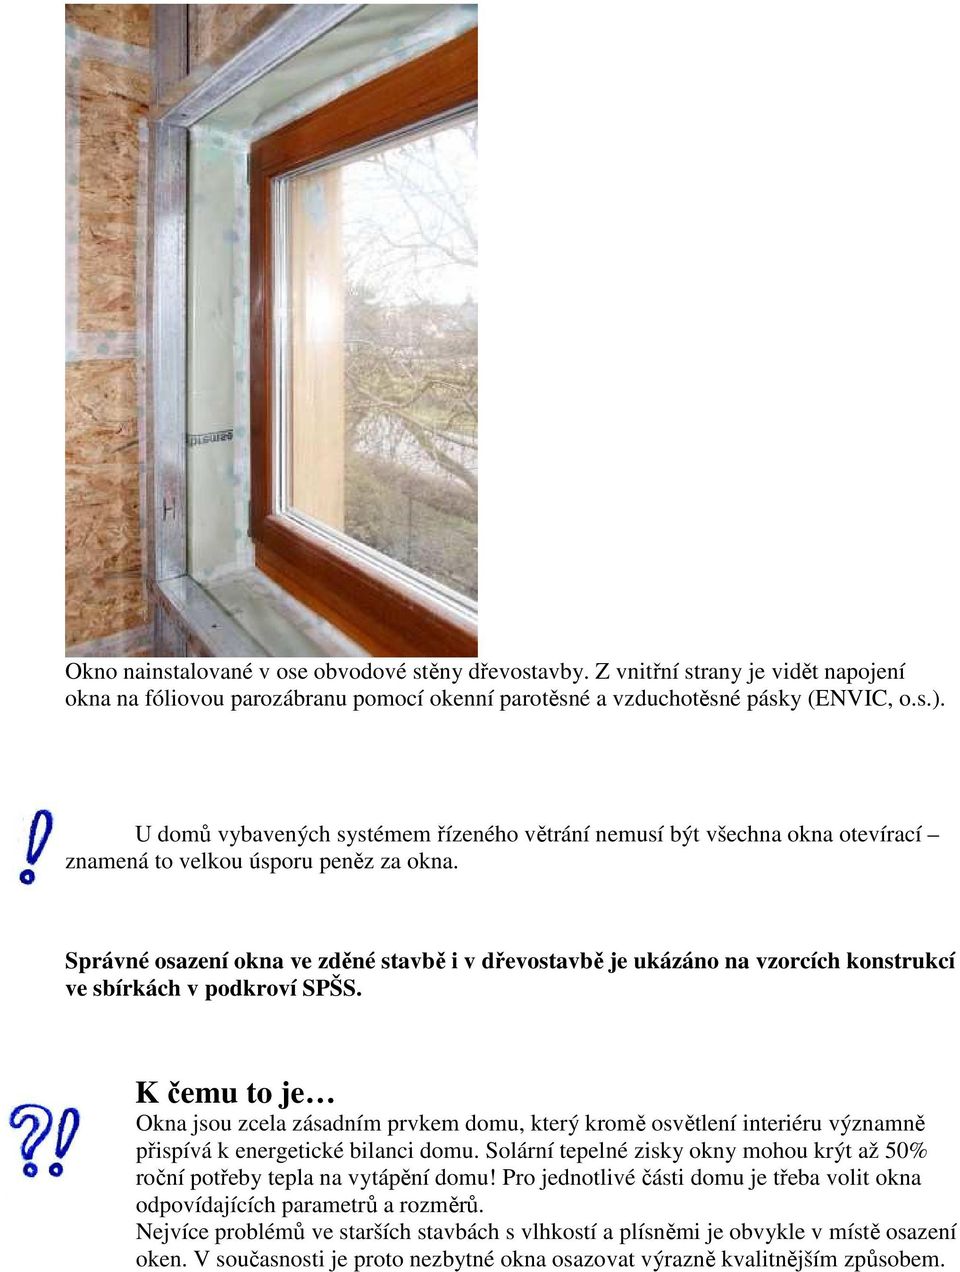 Správné osazení okna ve zděné stavbě i v dřevostavbě je ukázáno na vzorcích konstrukcí ve sbírkách v podkroví SPŠS.